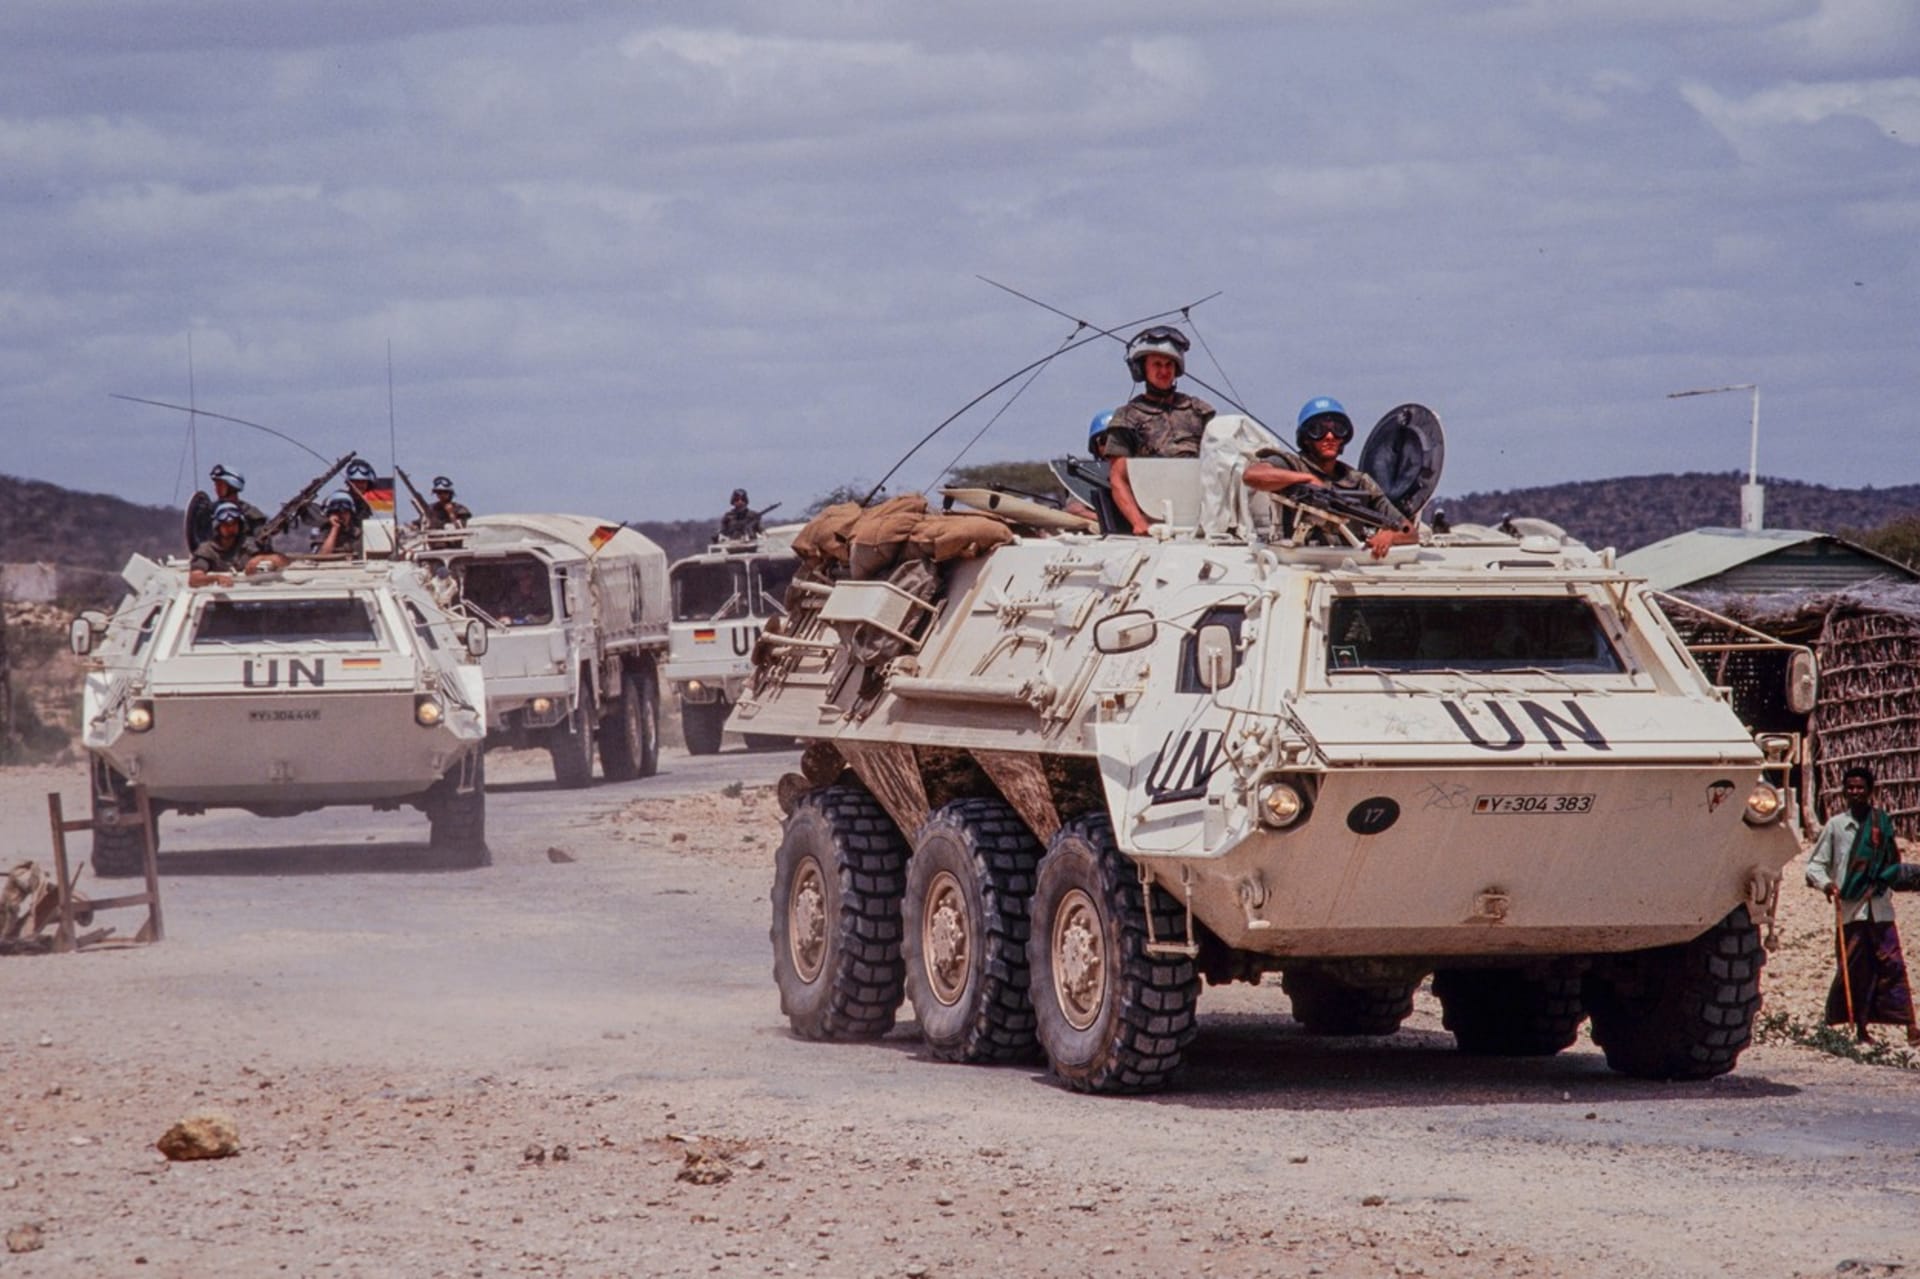 Konvoj německých příslušníků OSN v Somálsku